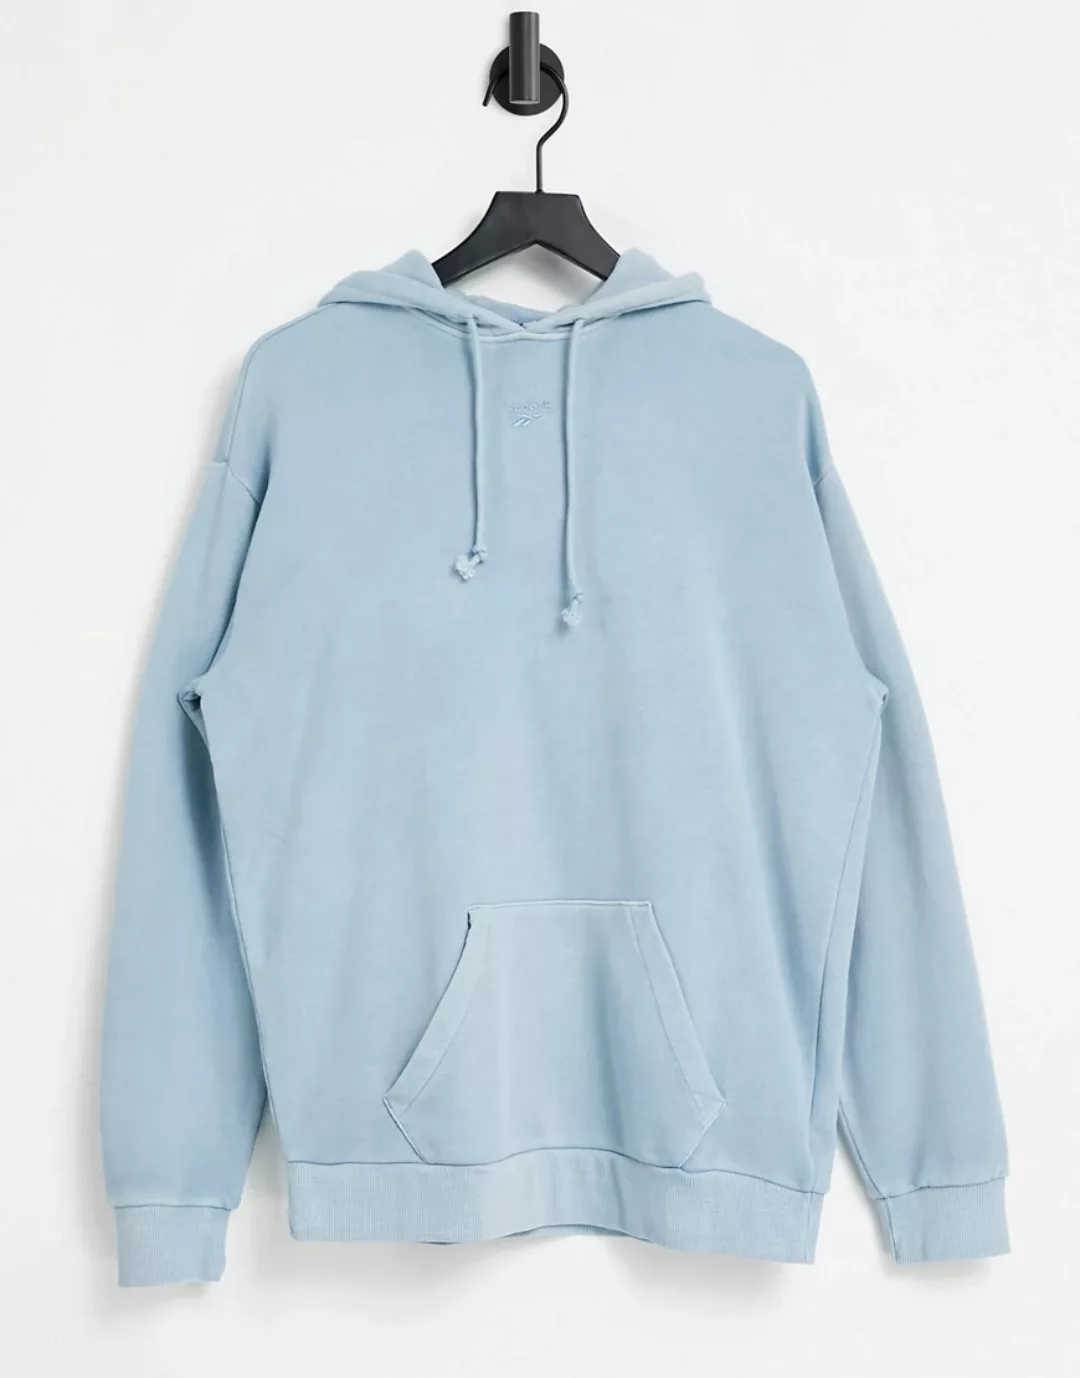 Reebok – Kapuzenpullover mit mittigem Logo in natürlich gefärbtem Blau-Grau günstig online kaufen